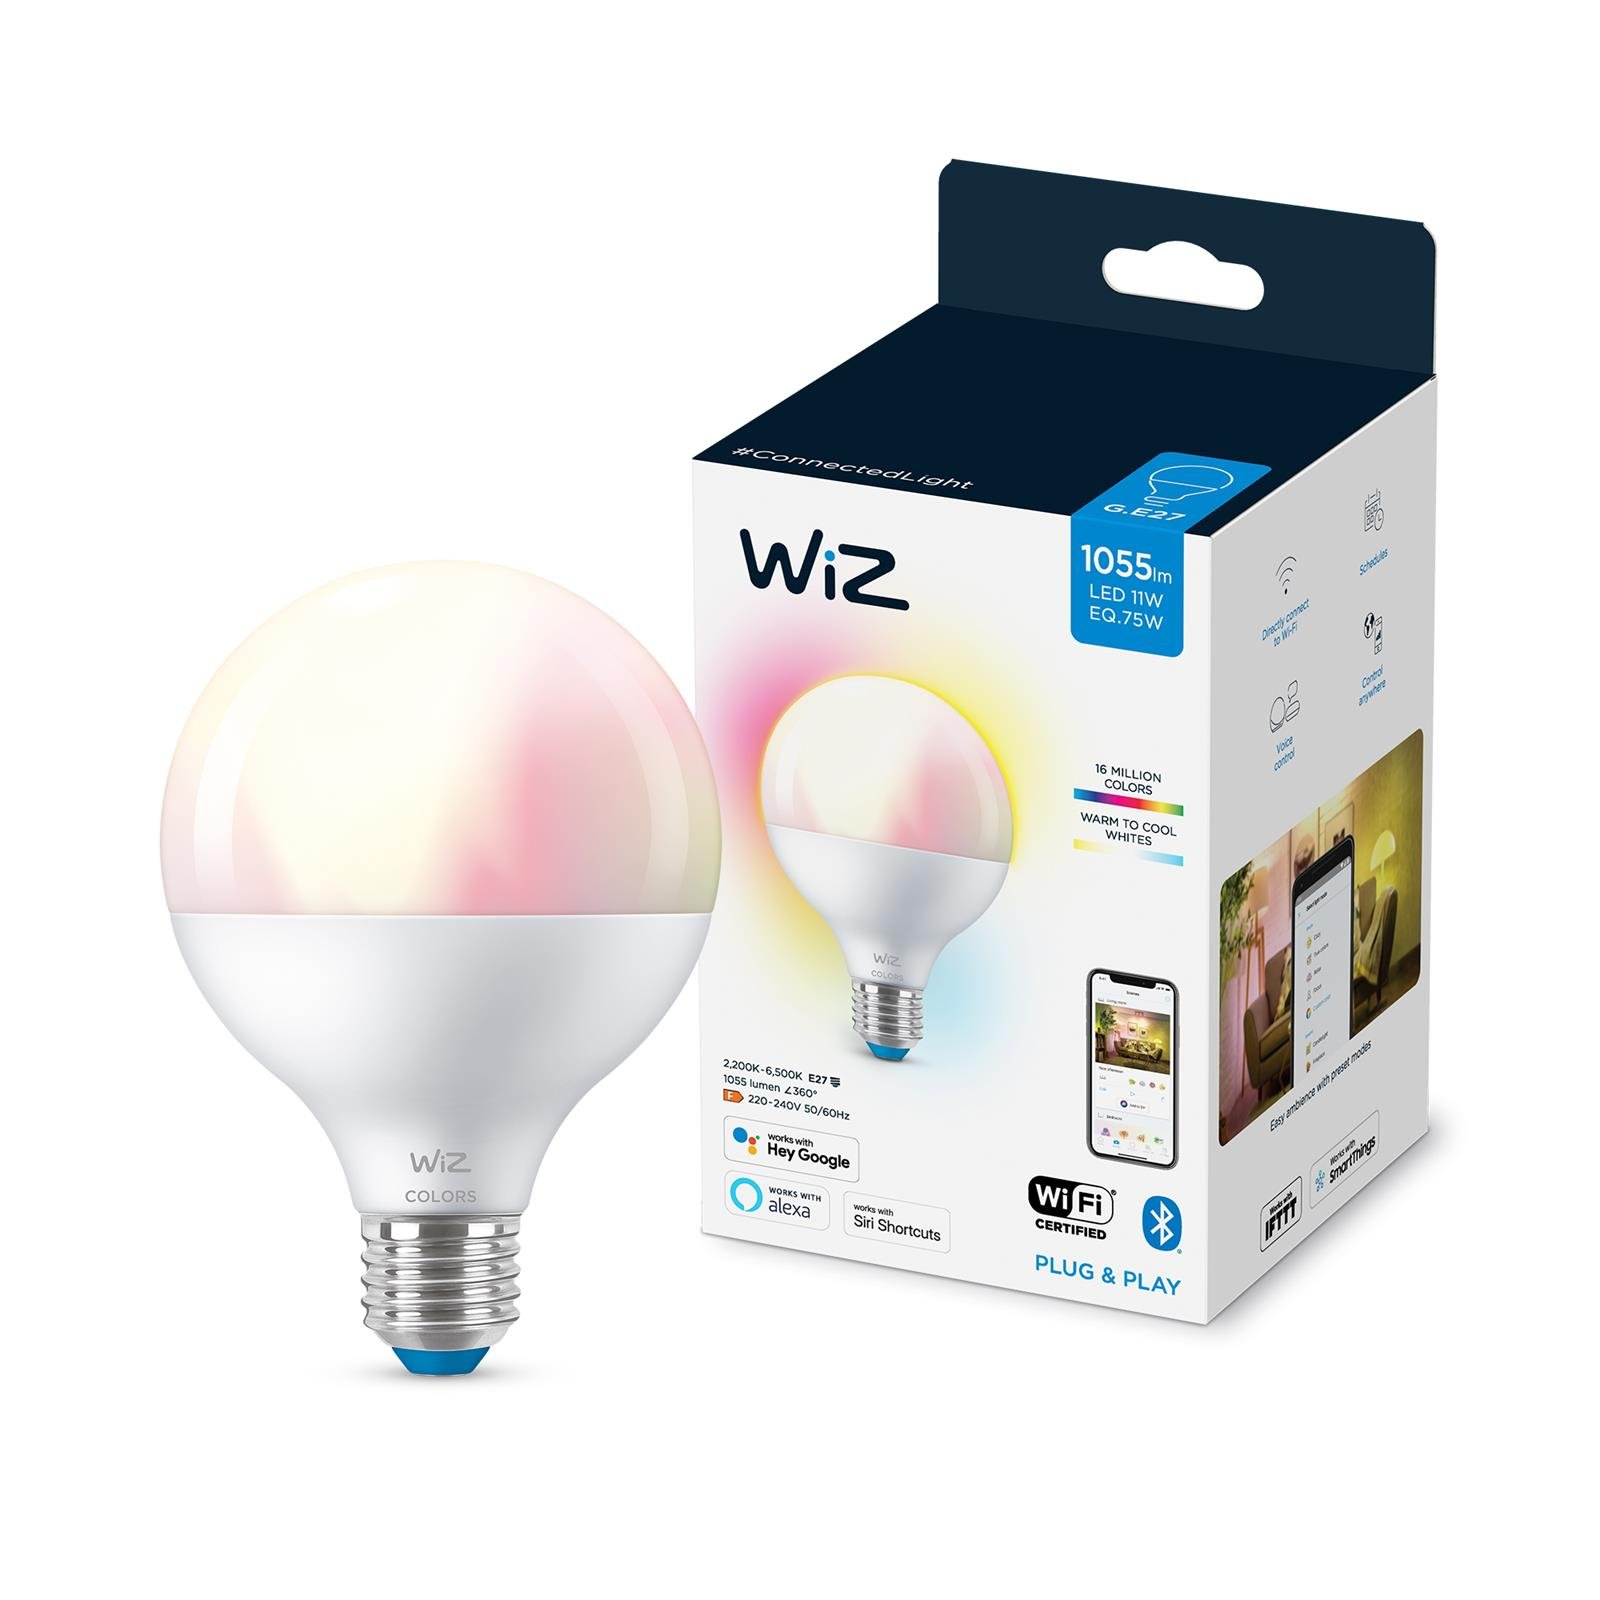 WIZ -wi-fi Ble Renkli Amb 11-75w G95 Globe E27 1pf/6 Akıllı Ampul -  929002383902 - Nethouse